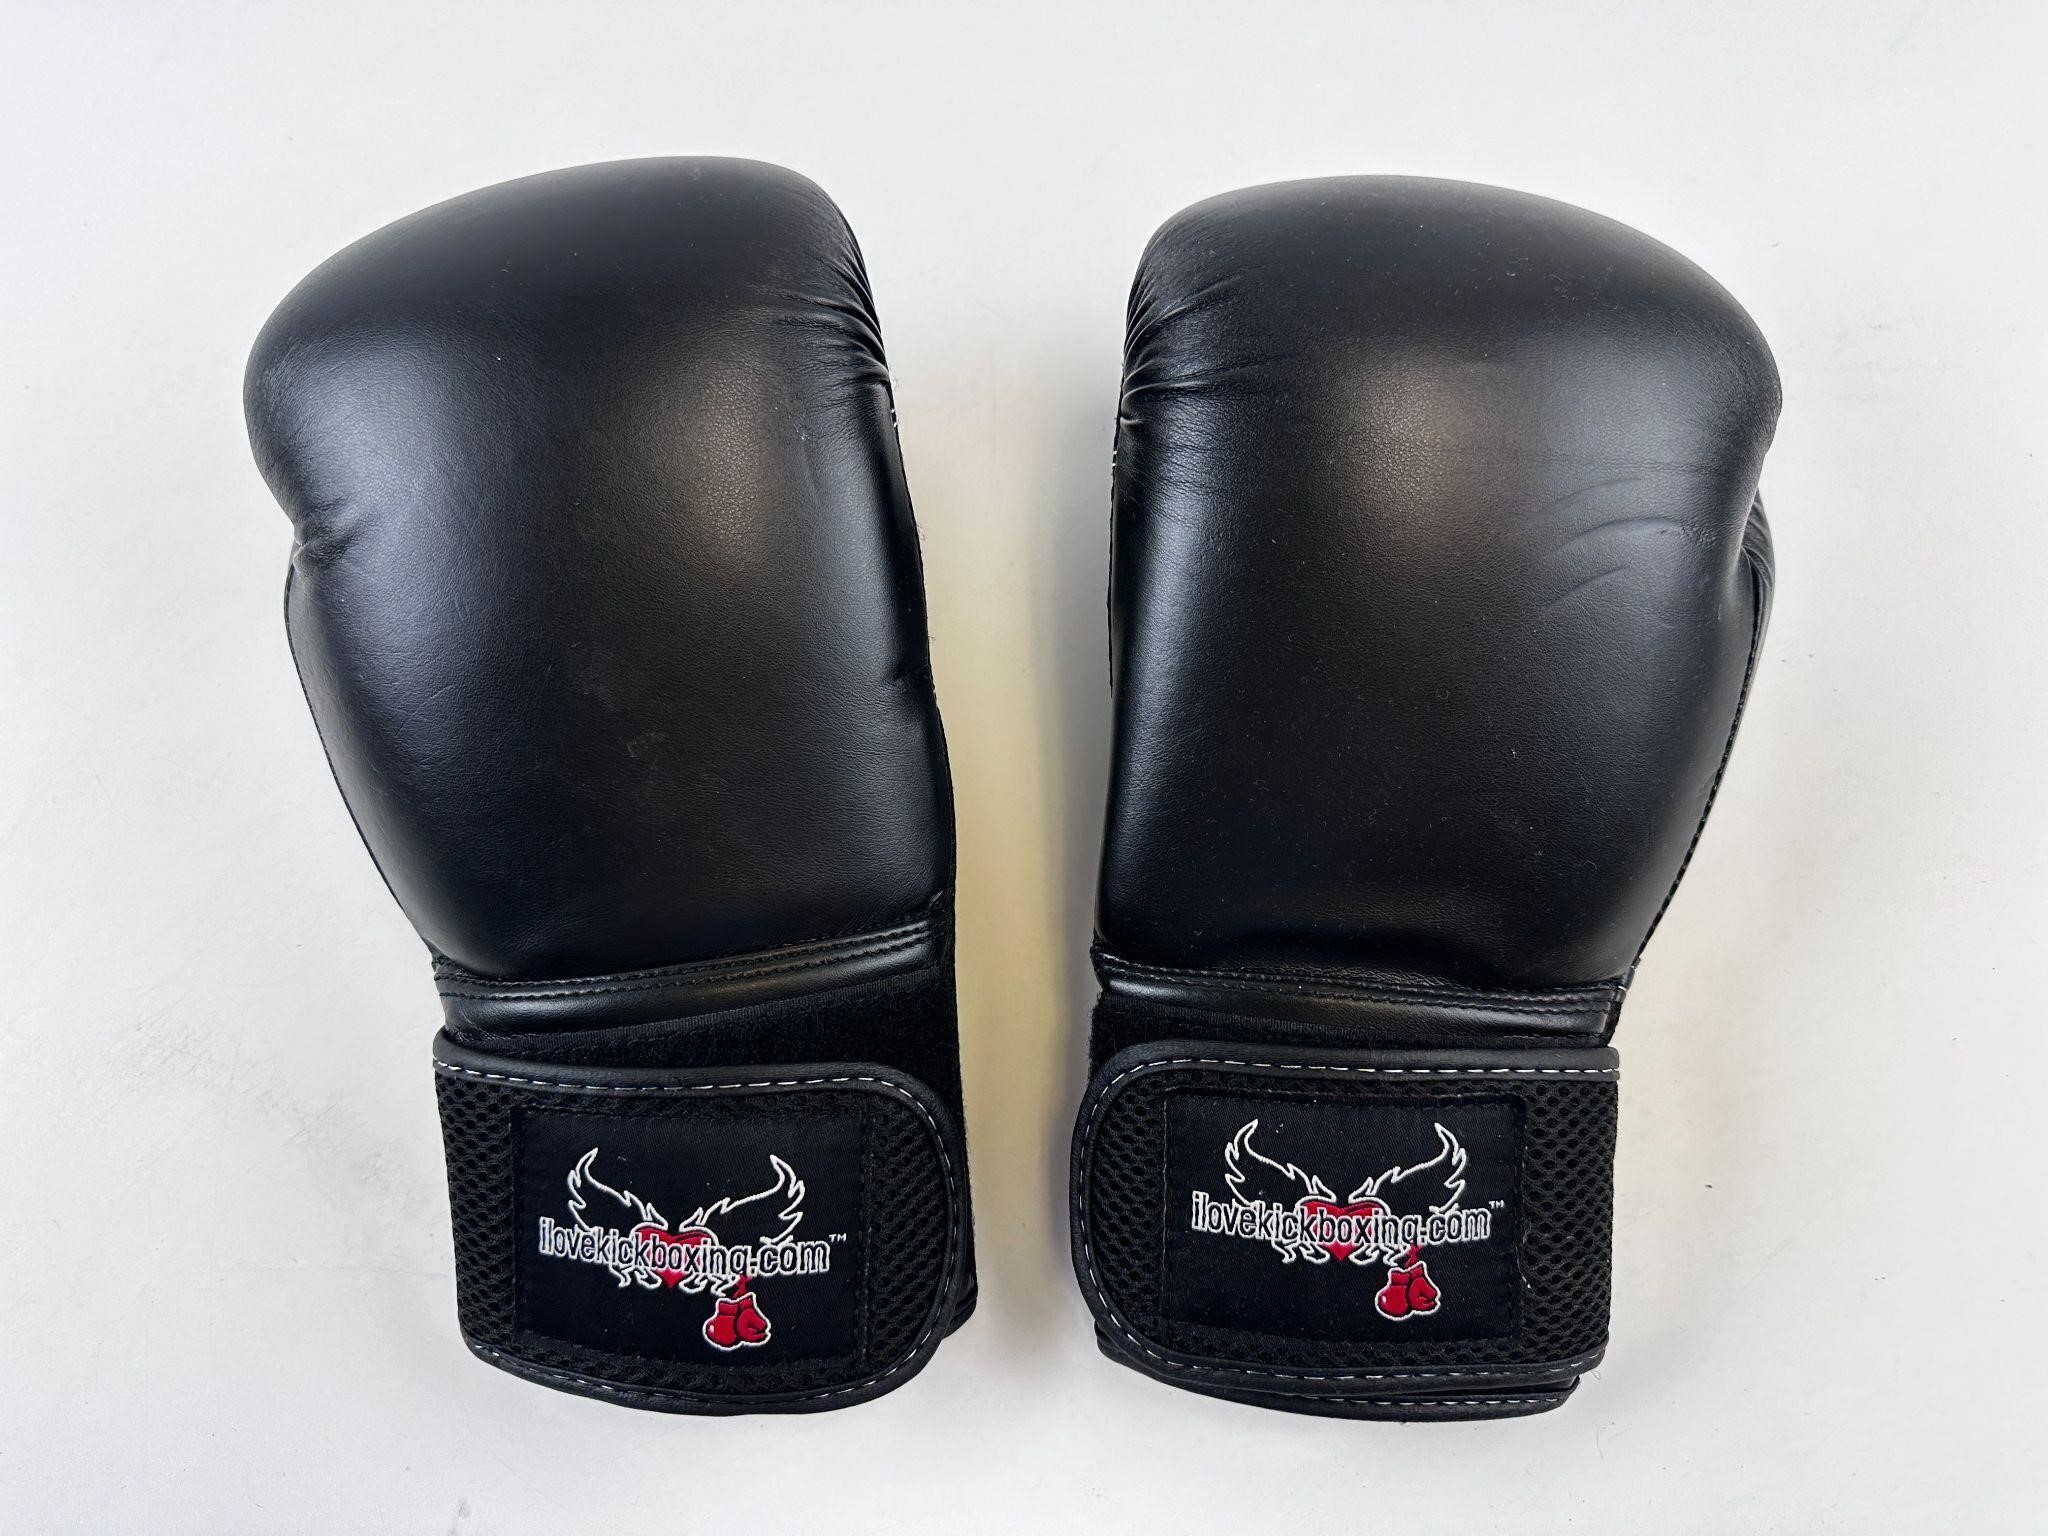 12 oz I Love Kickboxing Gloves